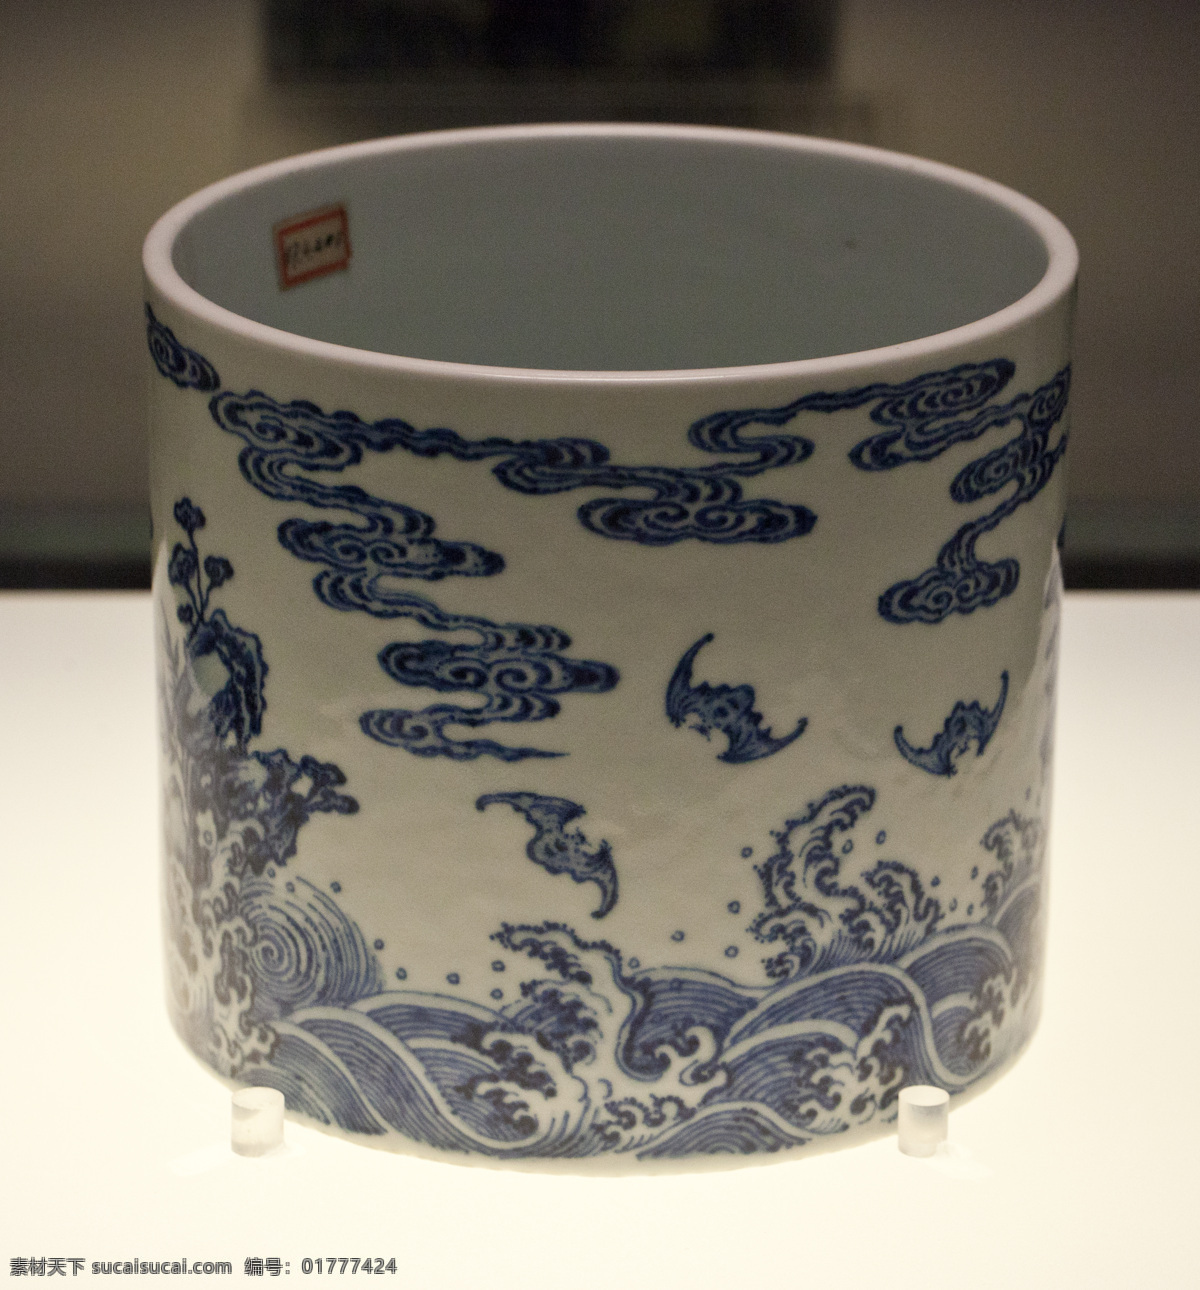 青花 寿山福海 纹 笔筒 清 雍正 寿山 福海 陶瓷 瓷器 文物 古董 收藏 首都 博物馆 陶瓷器 传统文化 文化艺术